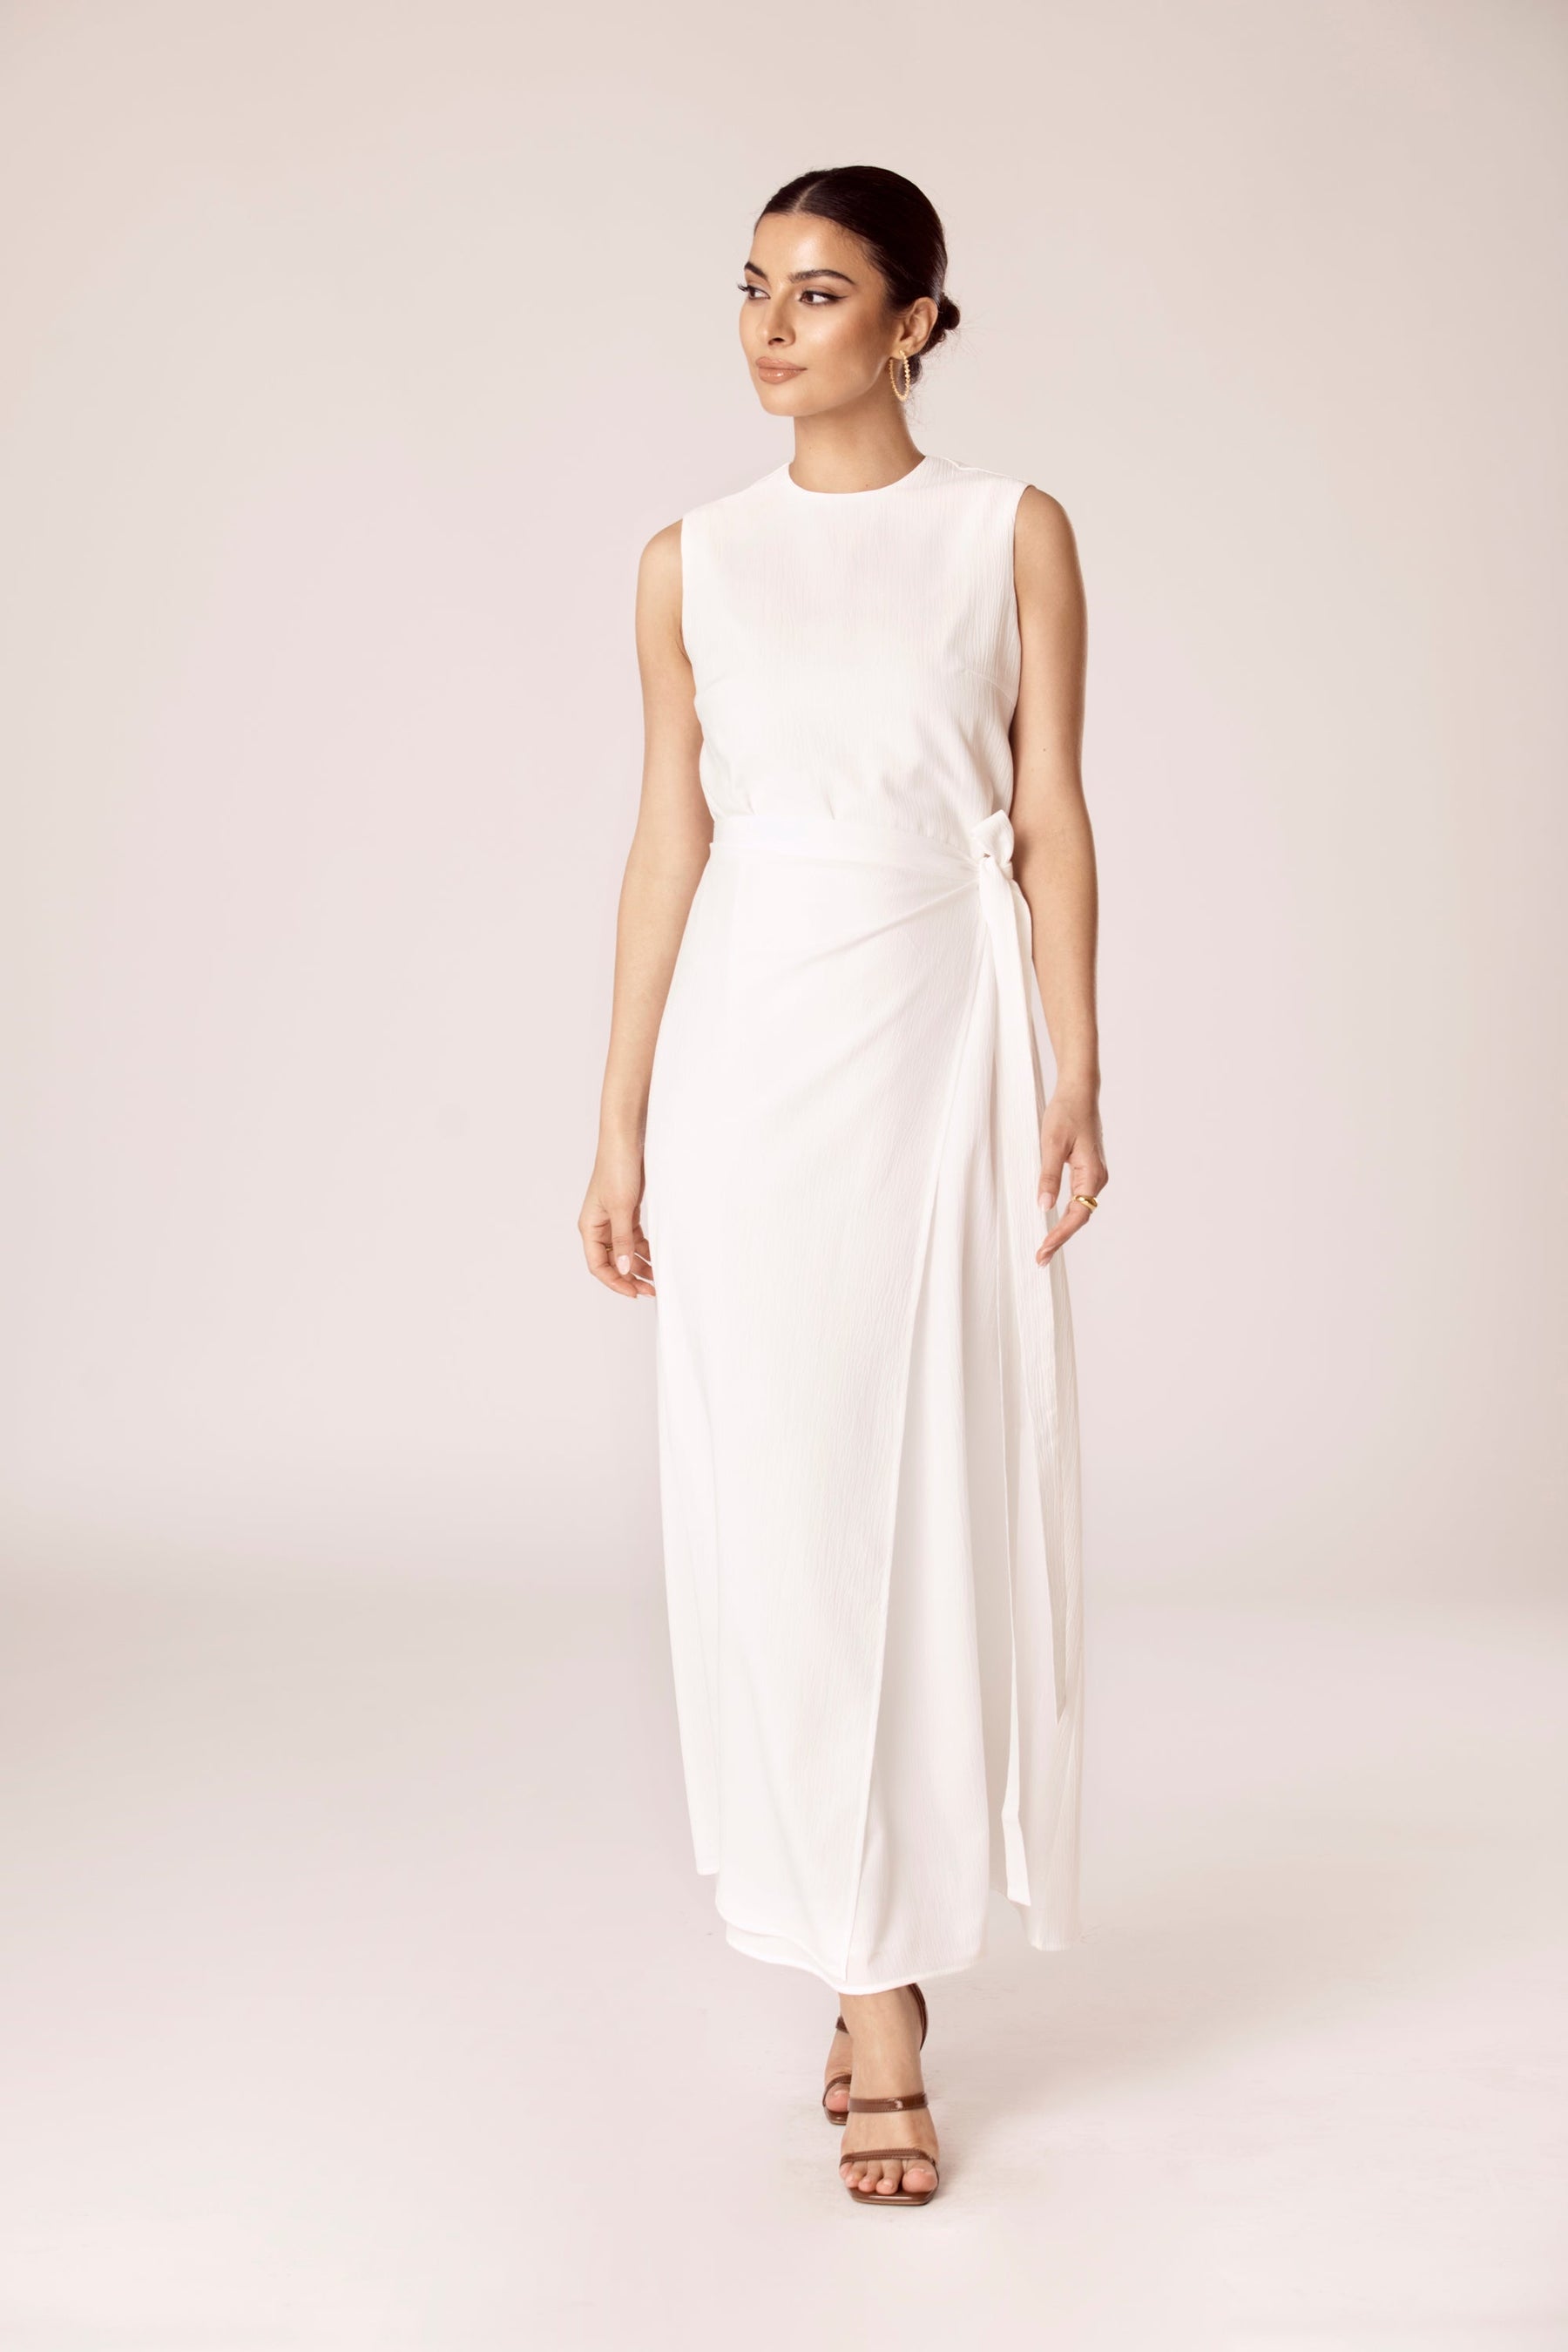 Noora Textured Three Piece Abaya Set - White Veiled Collection 